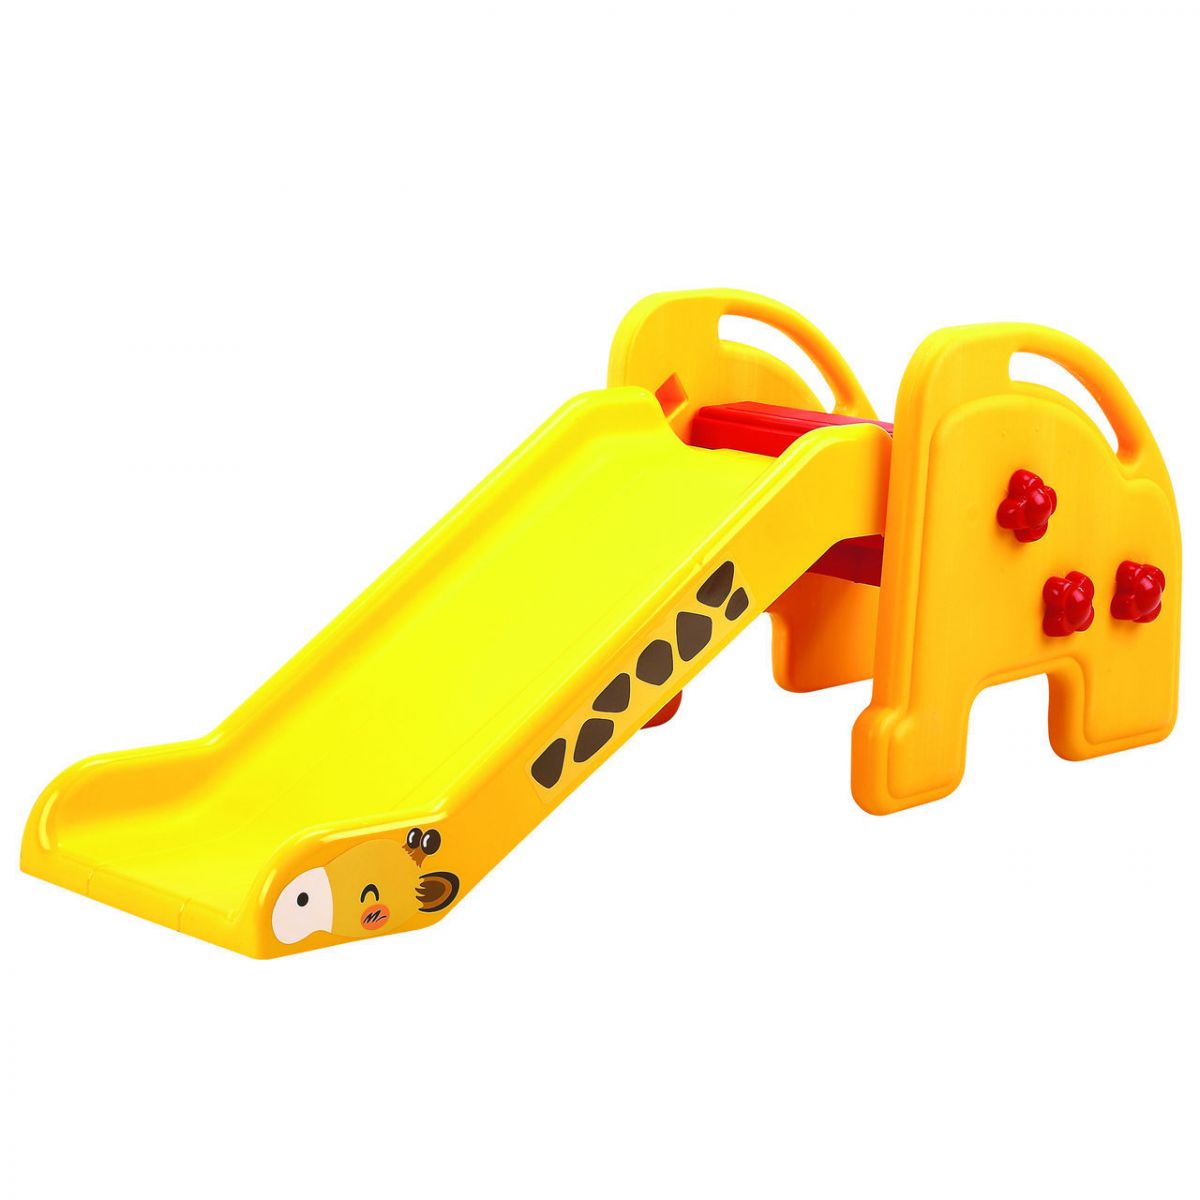 Детская горка для детей. Горка Жираф ku-1502 edu Play. Горка детская edu-Play Жираф жёлтый. Edu Play горка Жираф. Детская горка QIAOQIAO "малыш".